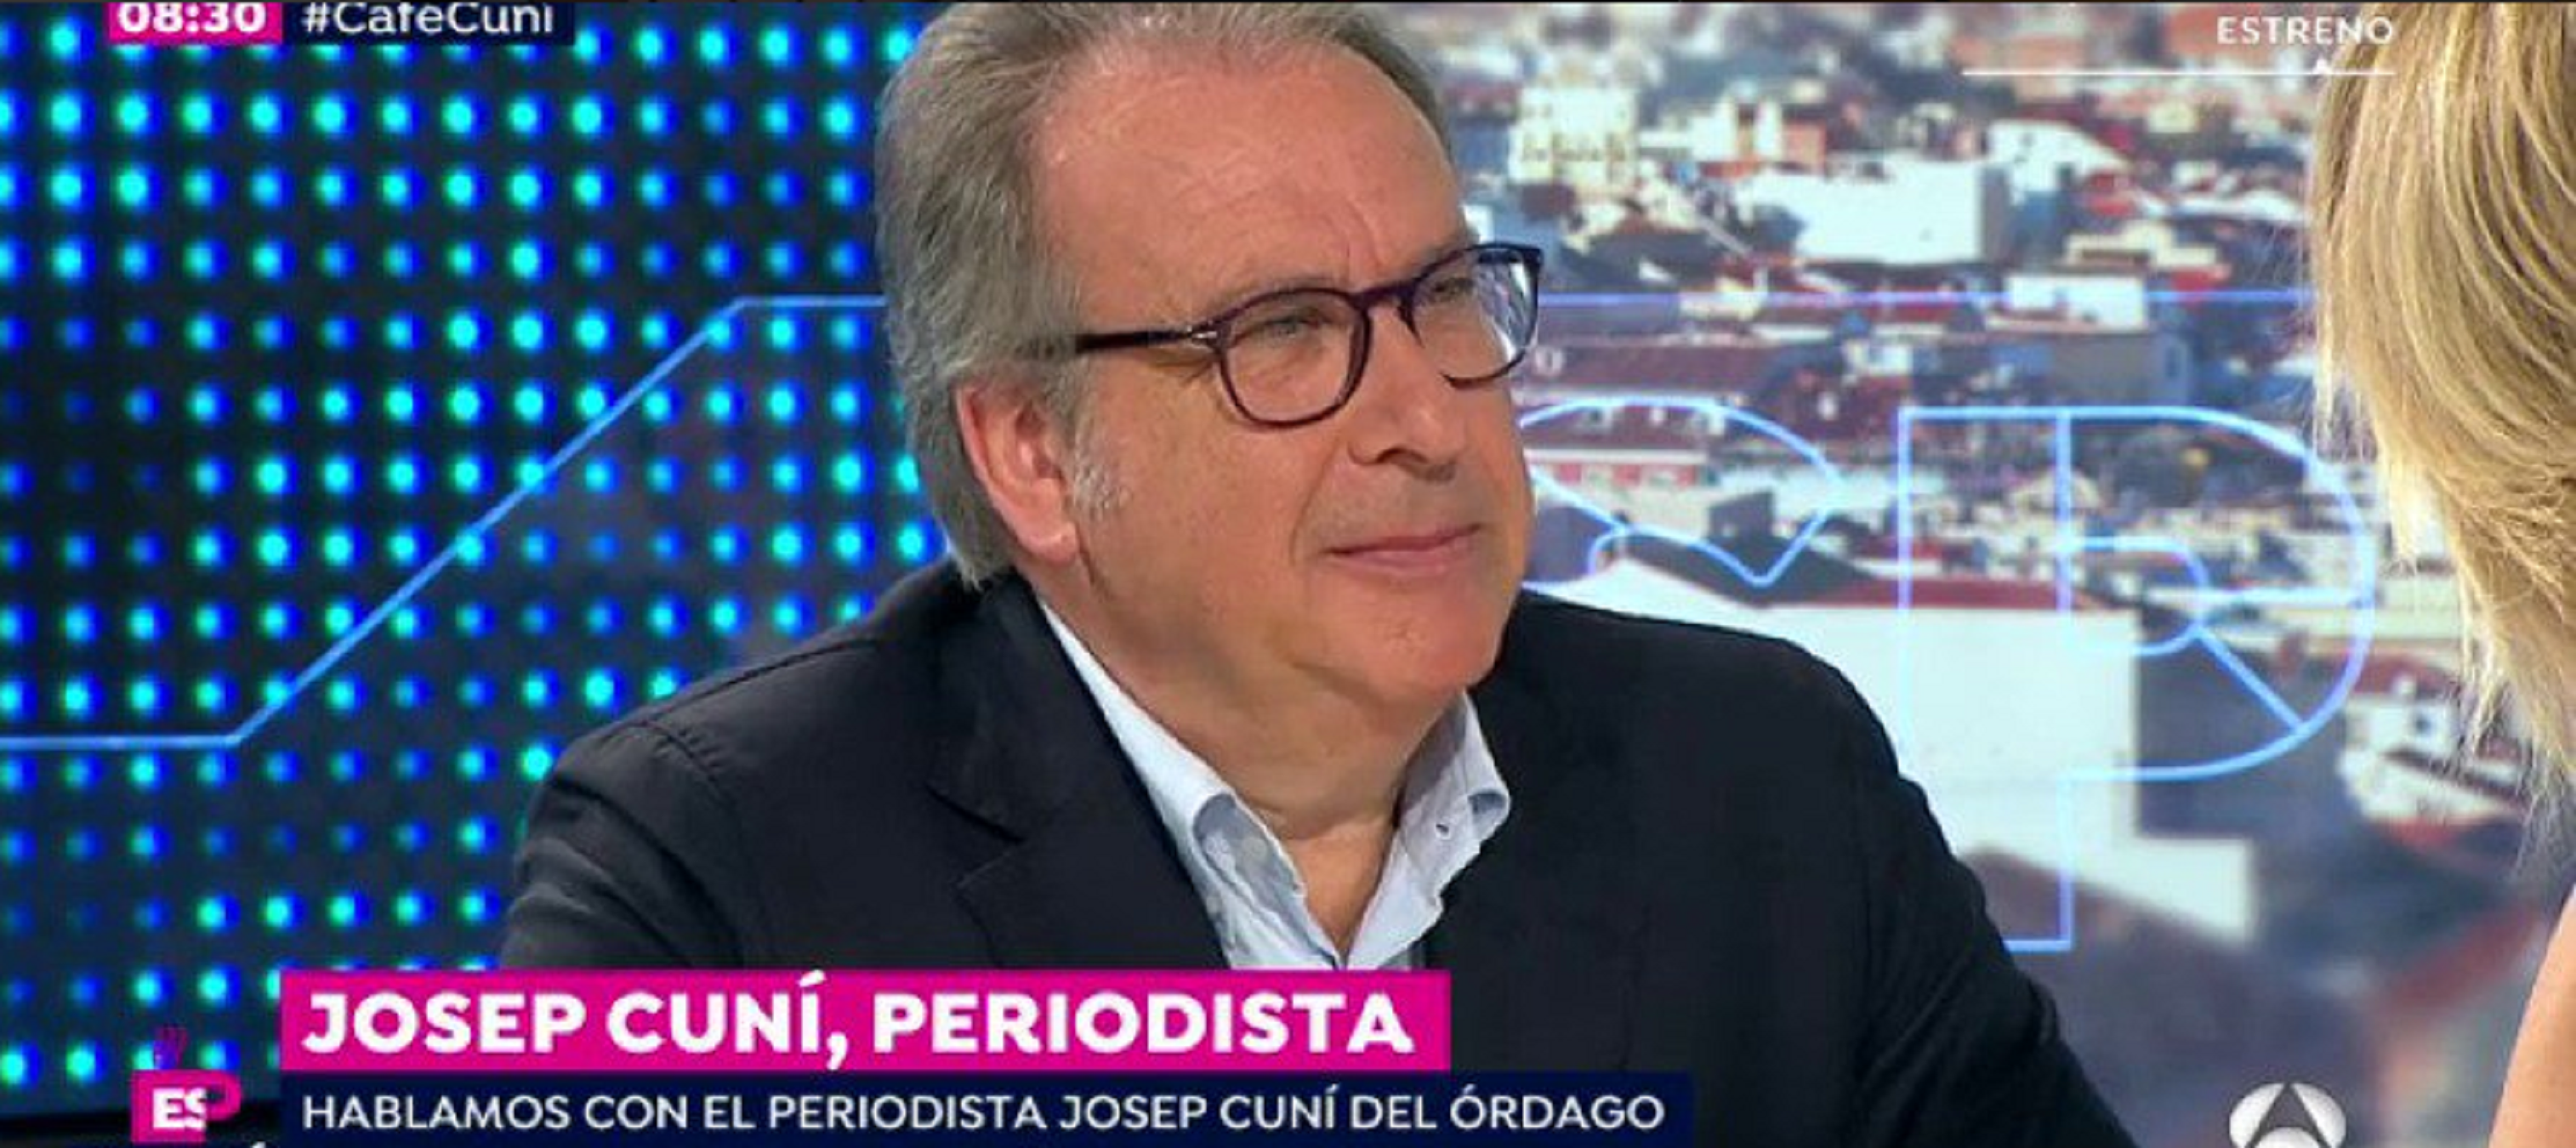 Josep Cuní torna a la televisió amb Susanna Griso a Antena 3